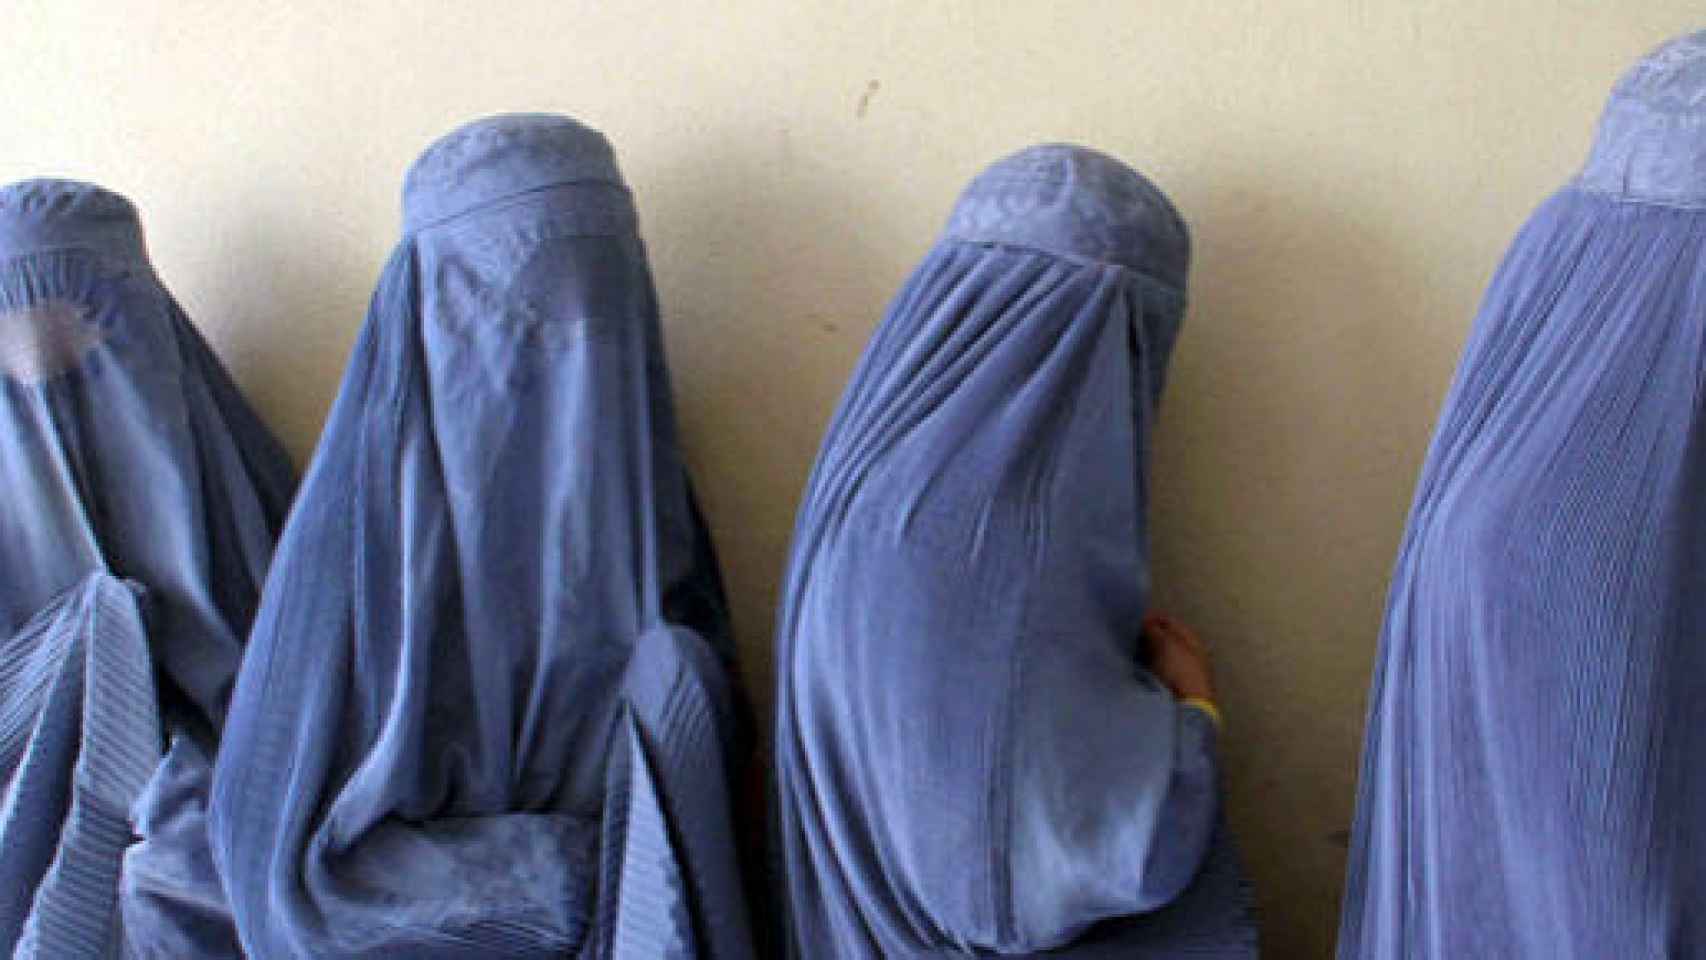 Miembros del partido de Angela Merkel quieren restringir el burka